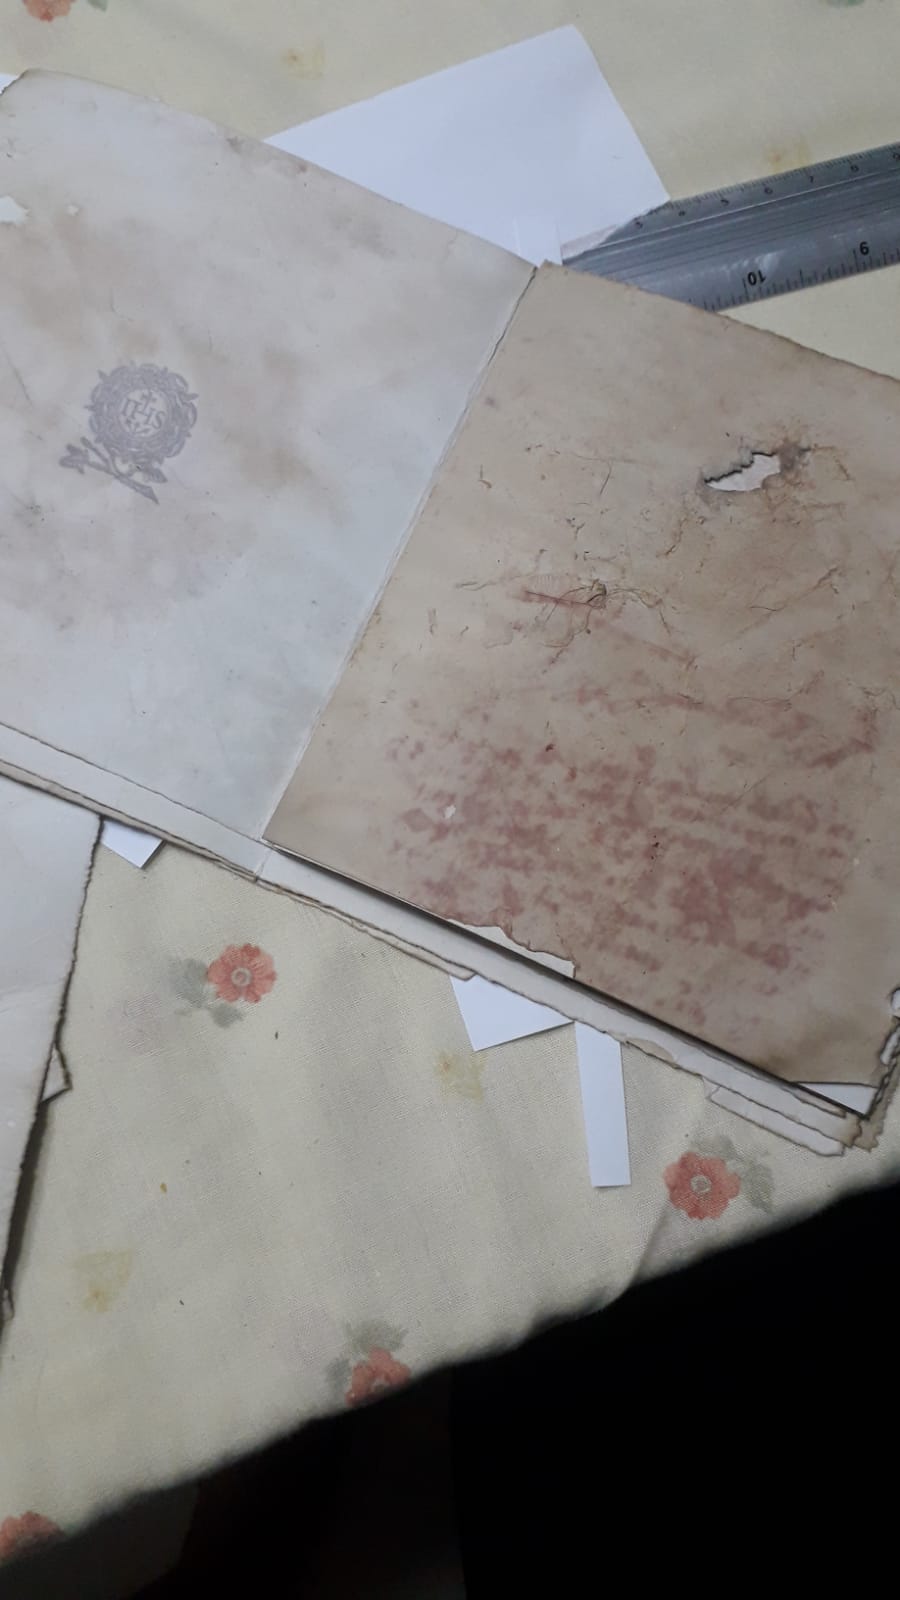 Imagem mostra processo de produção do caderno fictício atribuído ao Padre Anchieta, criado por Aparecido José Cirillo 